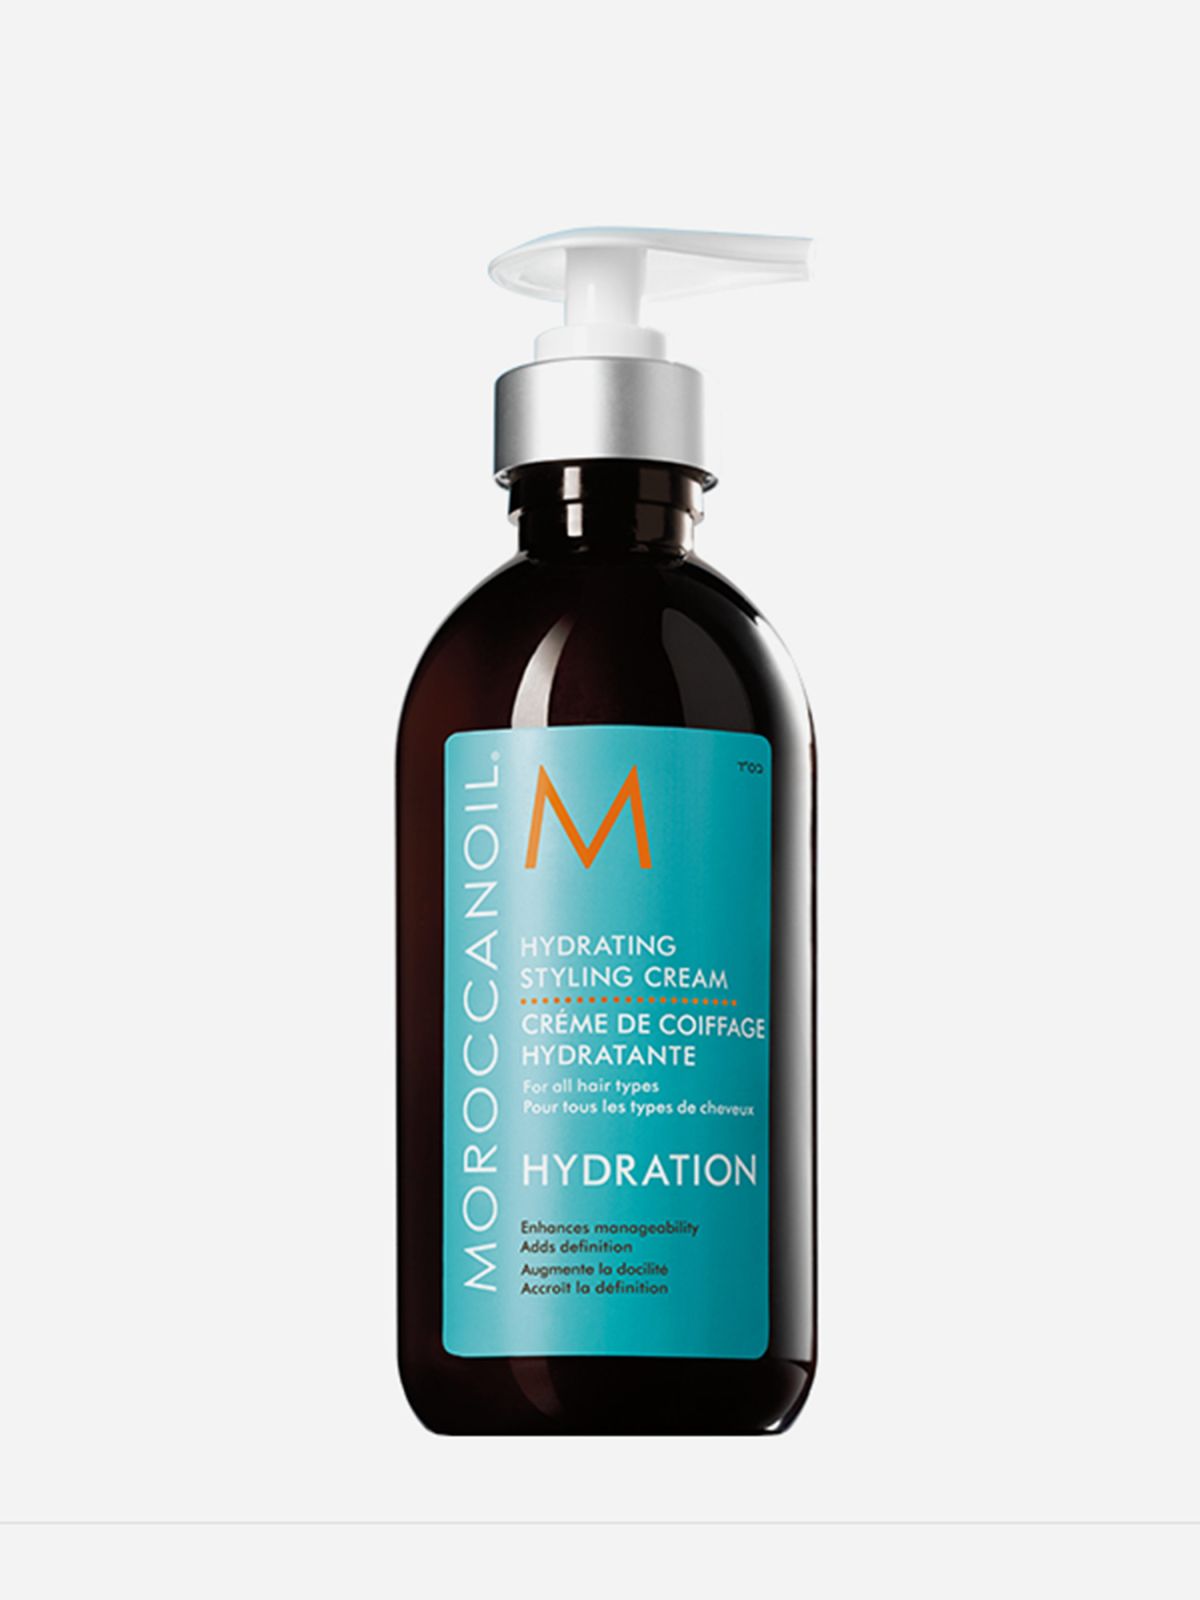  קרם לחות ועיצוב Hydrating styling cream של MOROCCANOIL